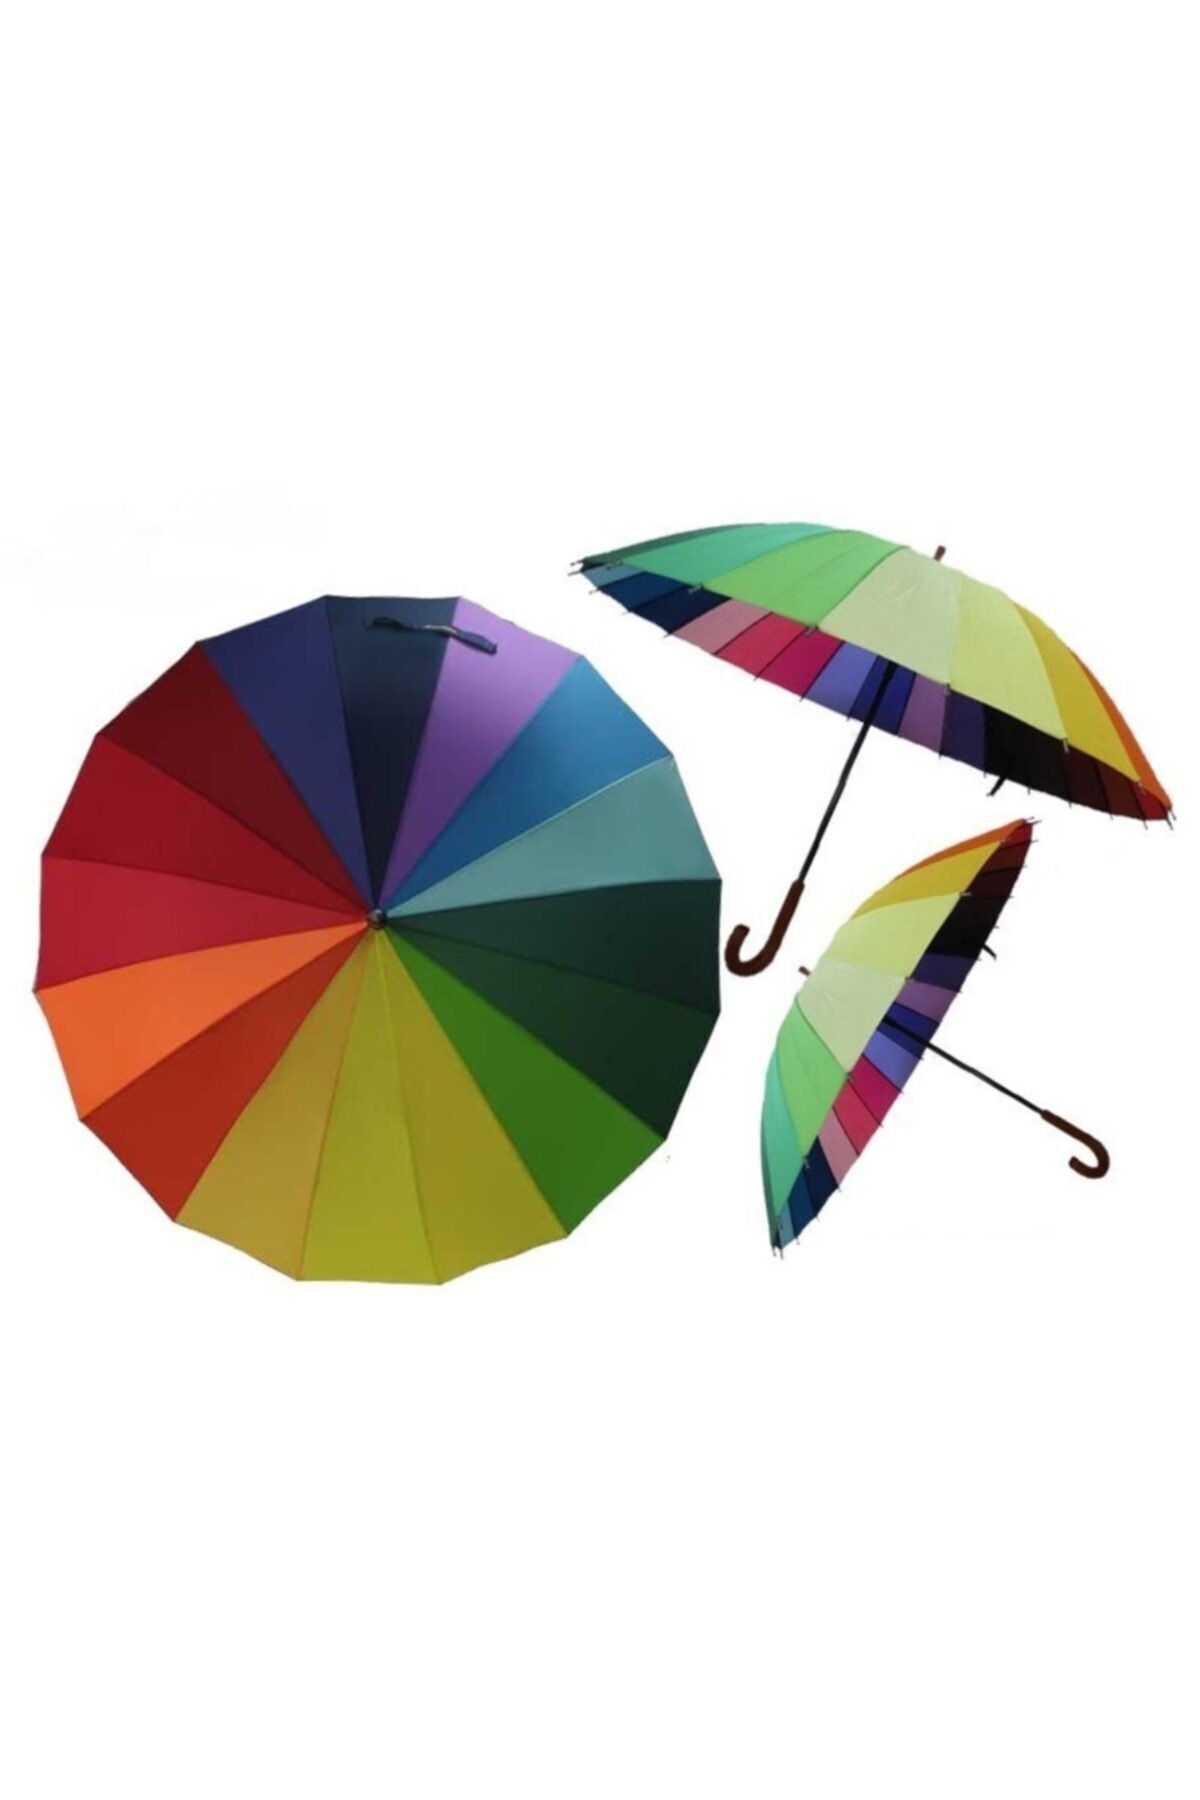 RoseRoi Gökkuşağı Şemsiye 16 Telli Rengarenk Dekorasyon Ve Süsleme Şemsiyesi